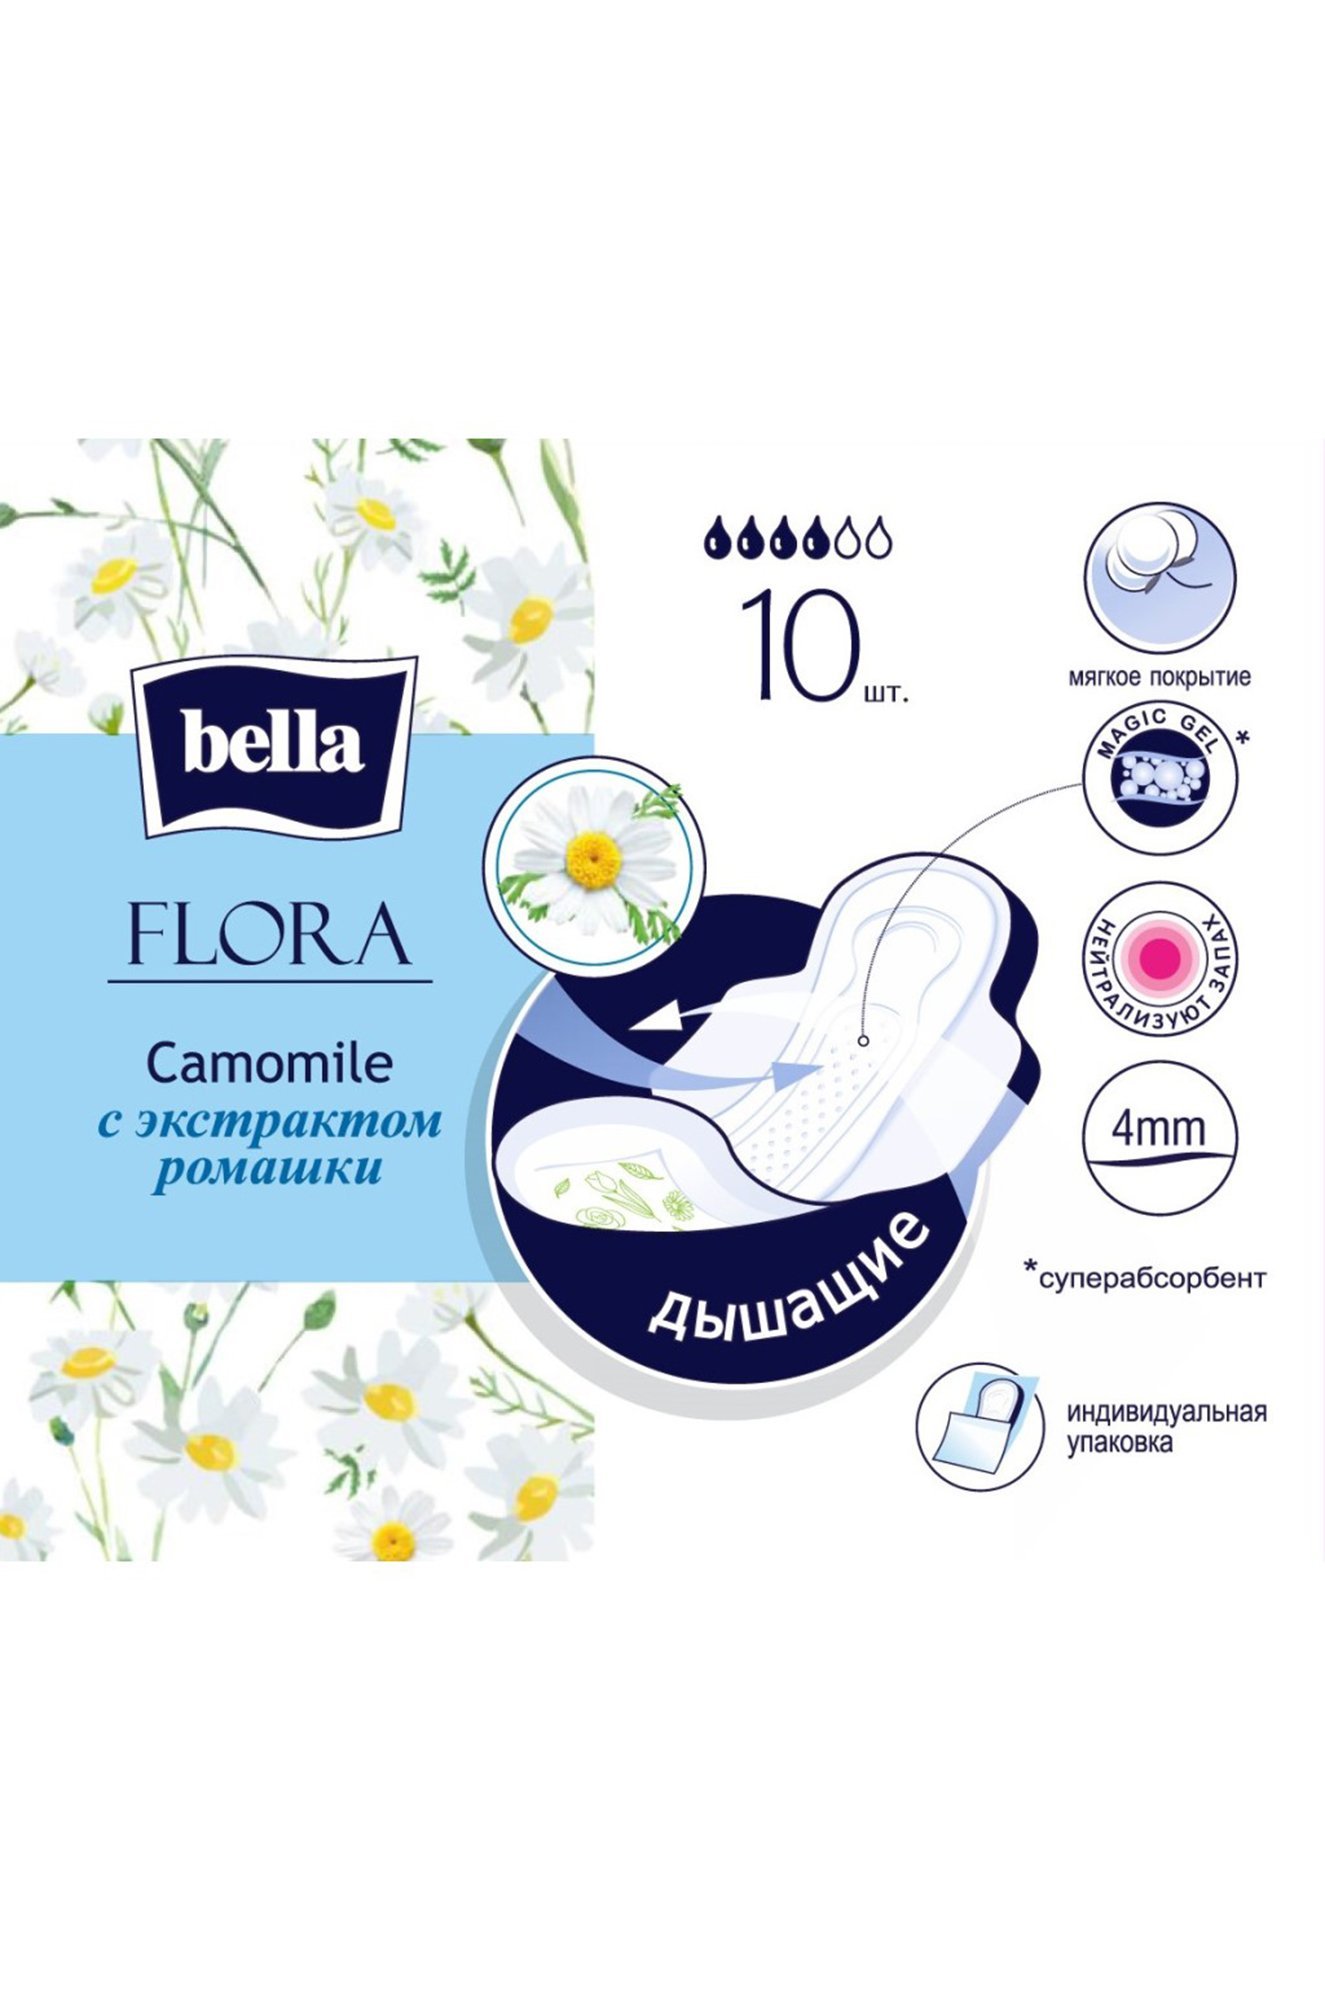 Женские гигиенические прокладки с экстрактом ромашки bella FLORA Camomile 10 шт. Bella